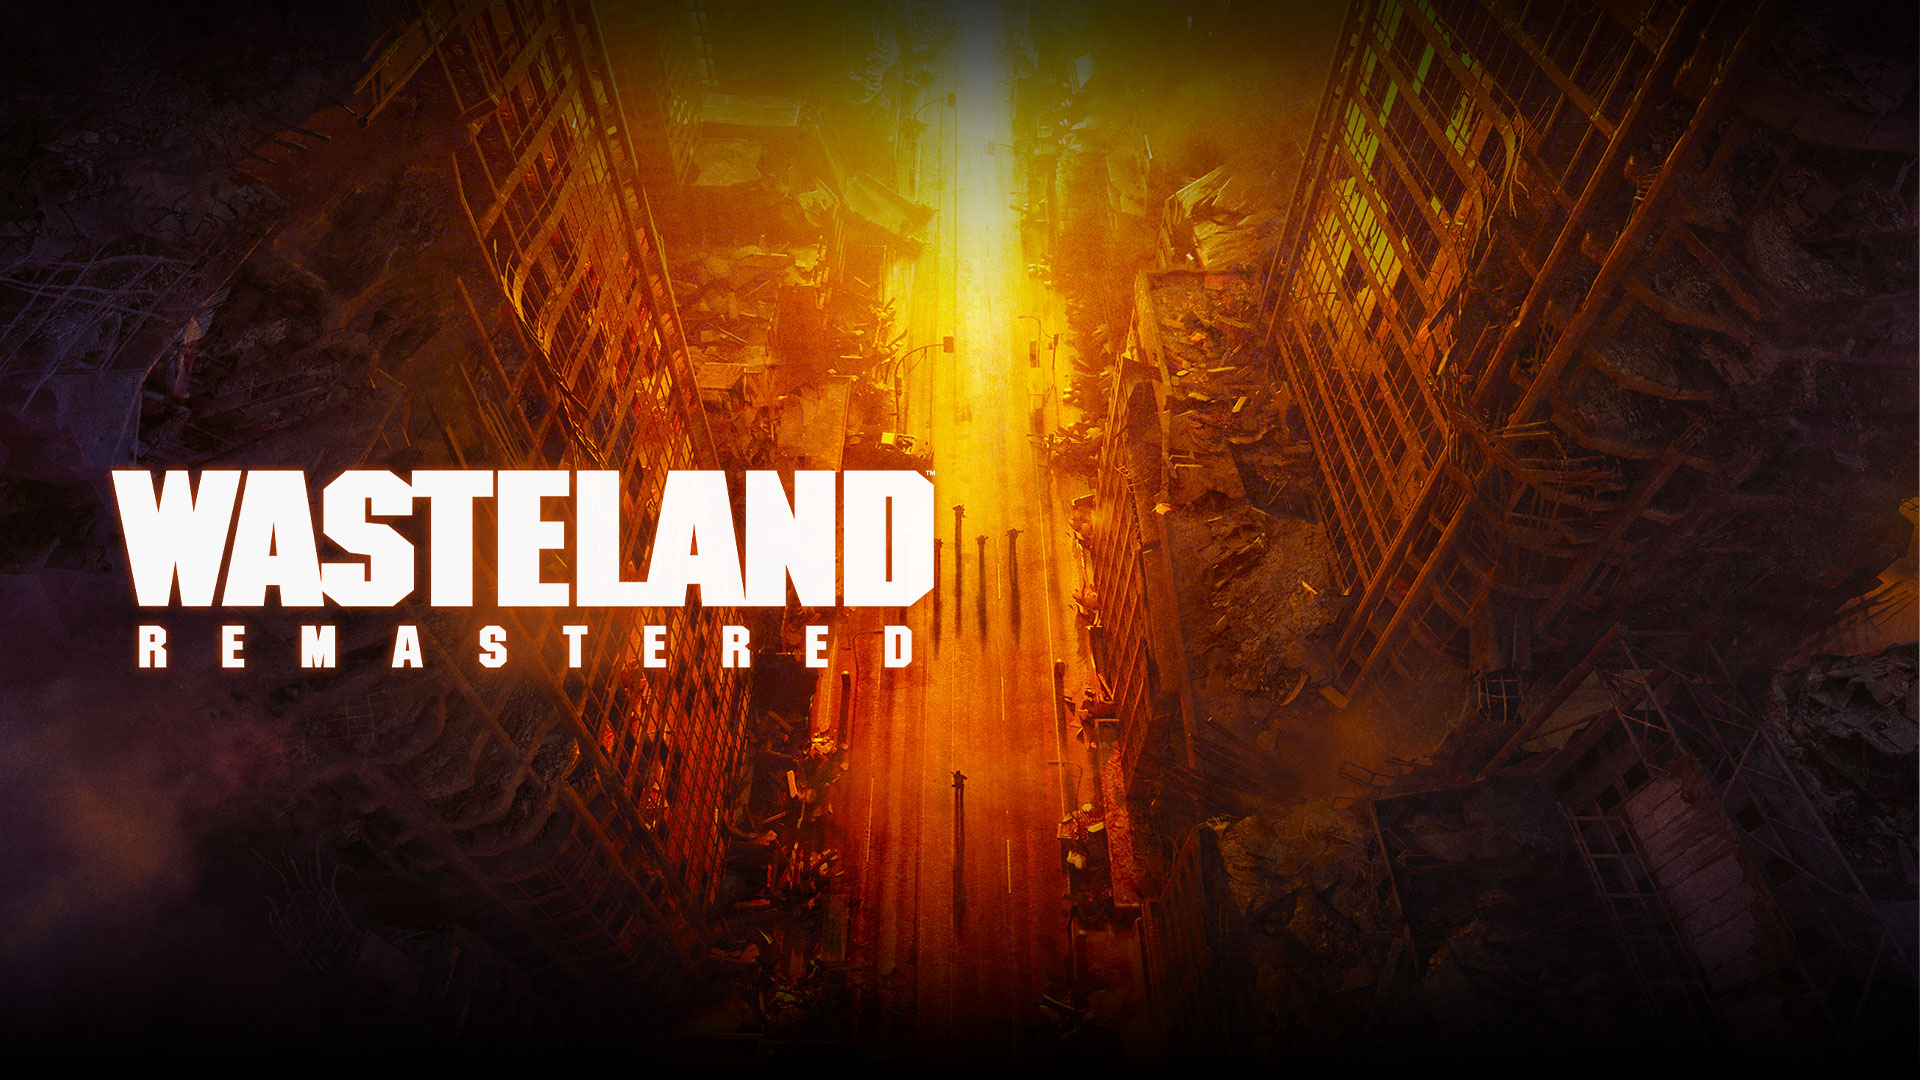 Wasteland Remastered，黃色、橙色和紅色色調街道上廢棄建築和路人的俯視圖。